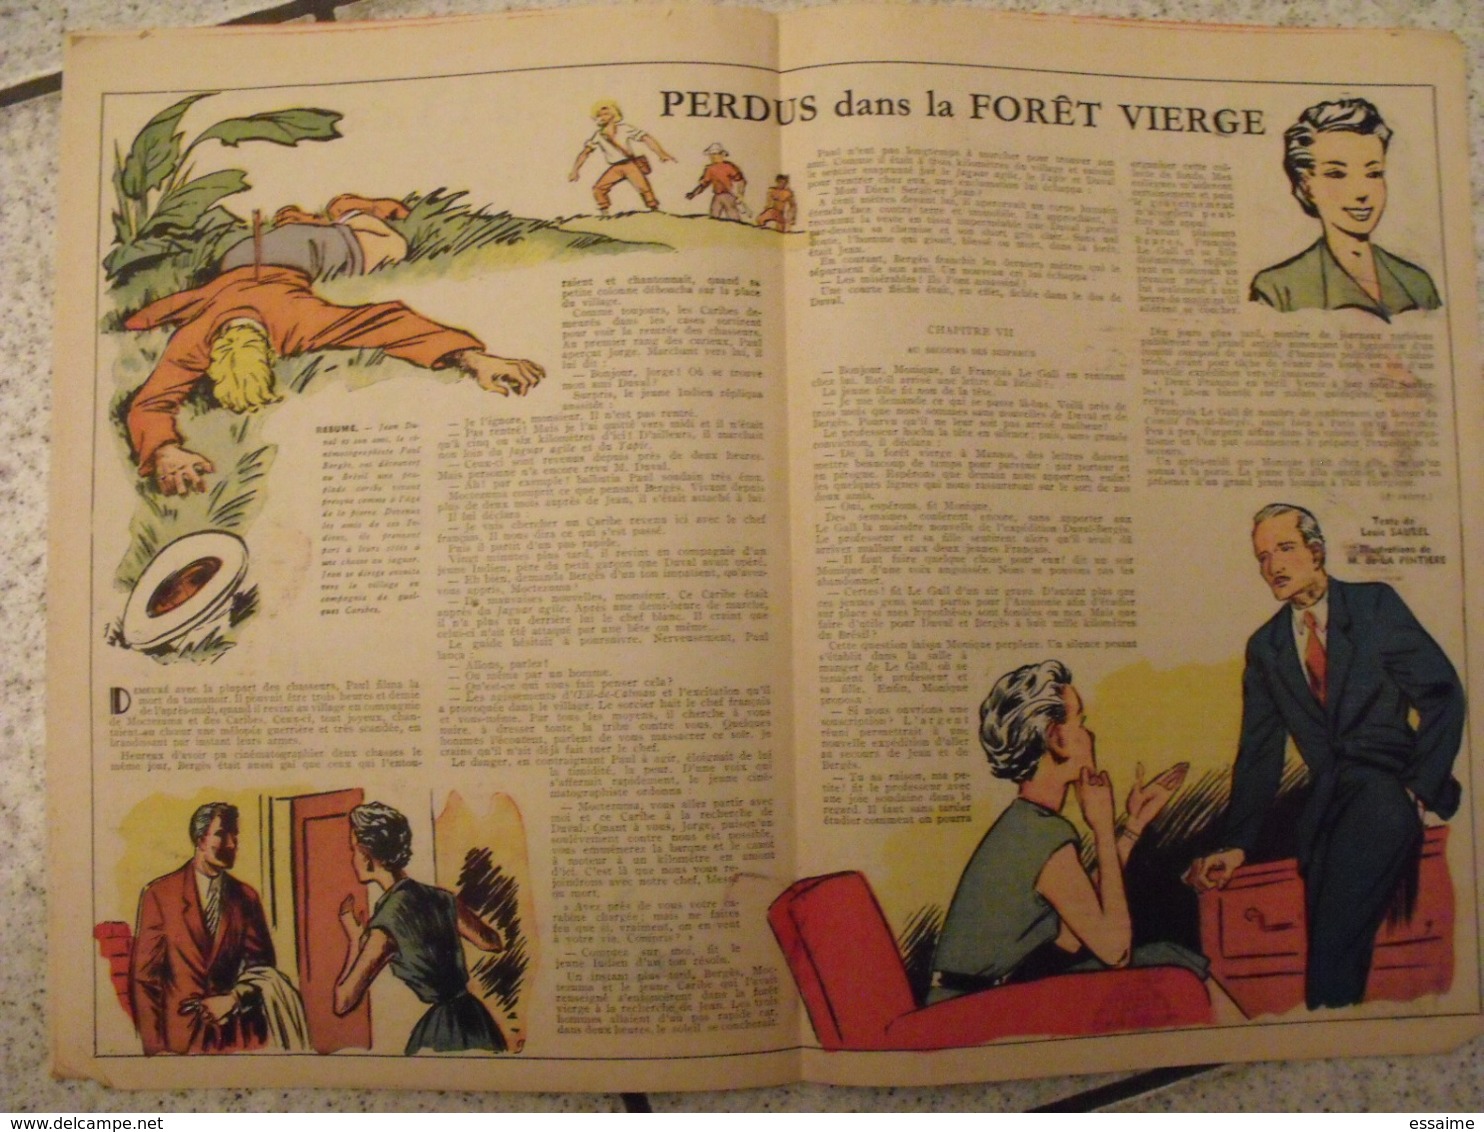 Lisette. 25 n° 1954-55. revue pour fillette. Erik (nique pat prune) Marié (zette reporter) Solveg Desrieux à redécouvrir